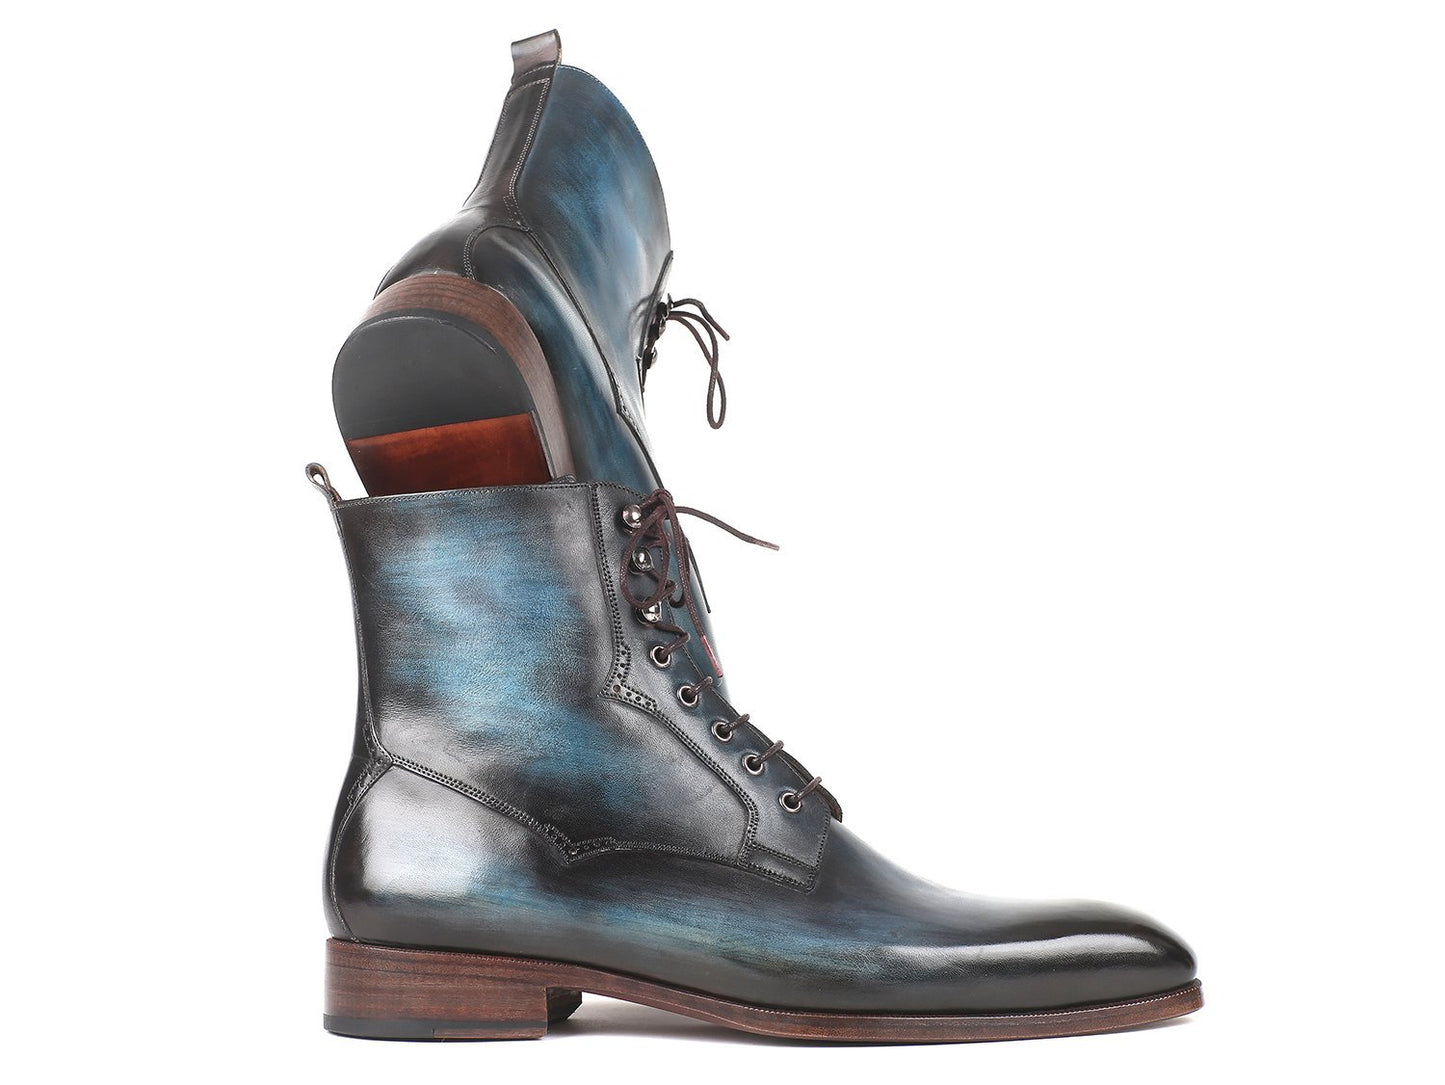 TEEK - Paul Parkman Blue & Brown Leather Boots SHOES theteekdotcom EU 38 - US 6  